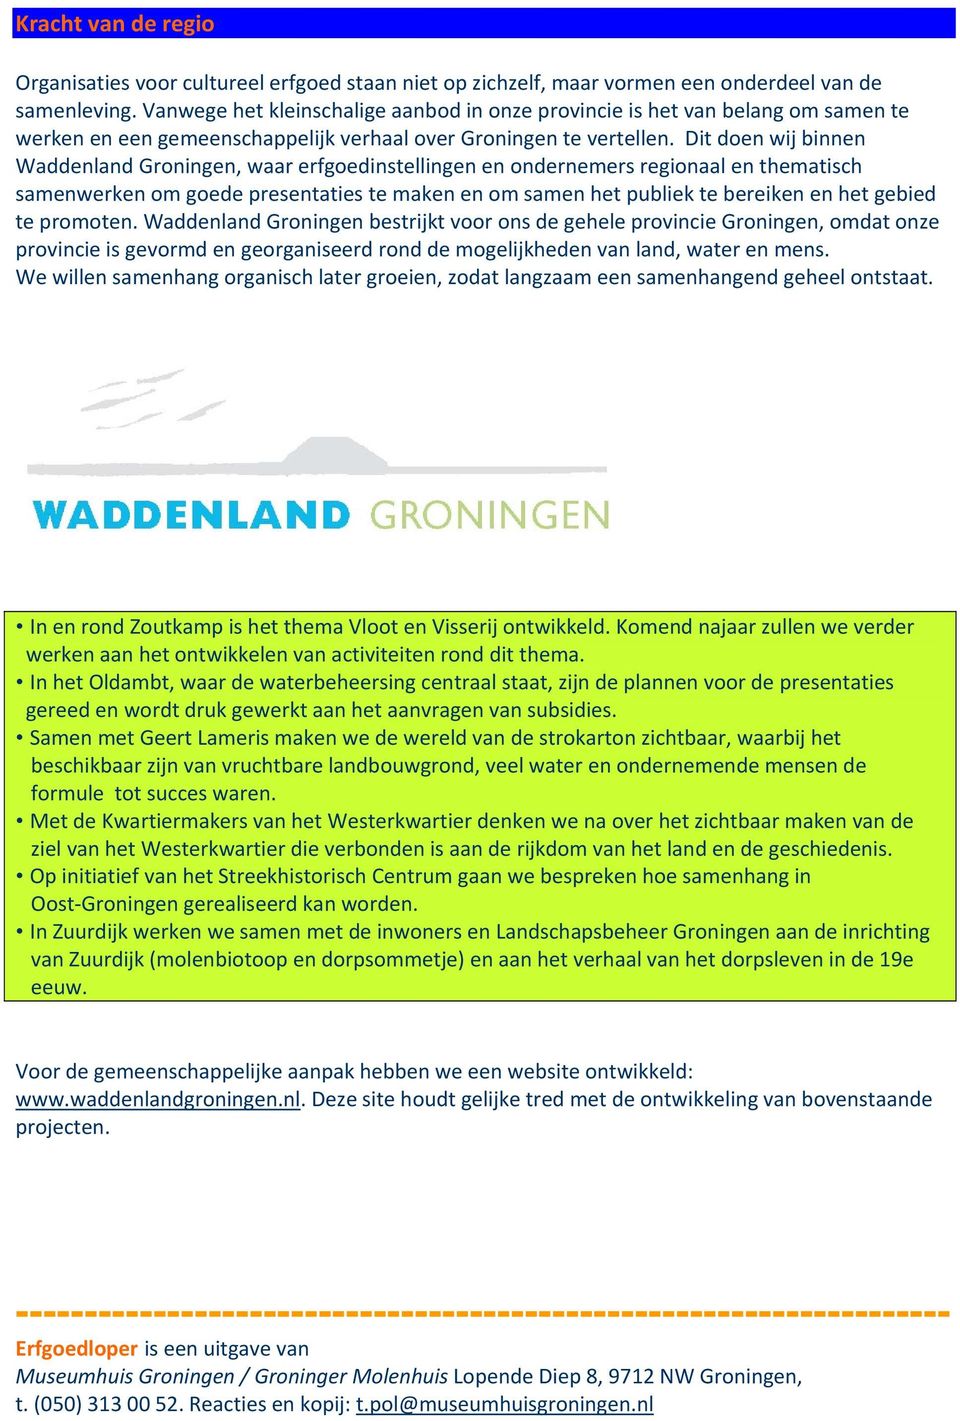 Dit doen wij binnen Waddenland Groningen, waar erfgoedinstellingen en ondernemers regionaal en thematisch samenwerken om goede presentaties te maken en om samen het publiek te bereiken en het gebied